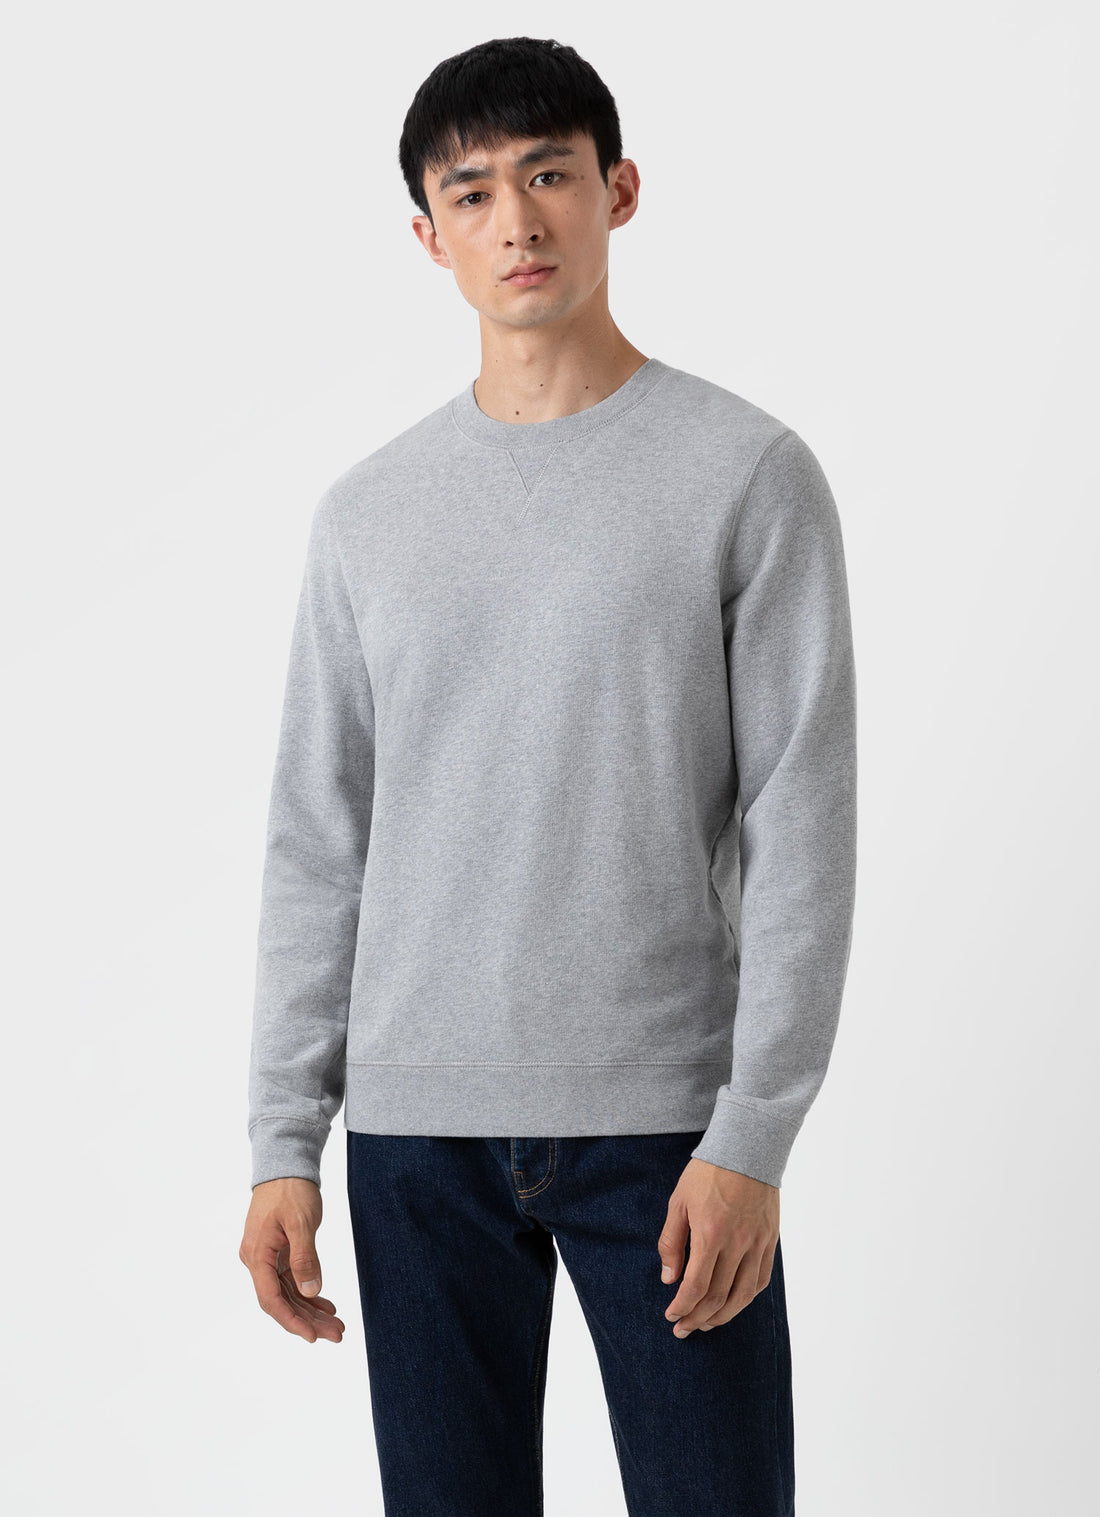 Men’s Sweatshirts & Sweatpants | Sunspel